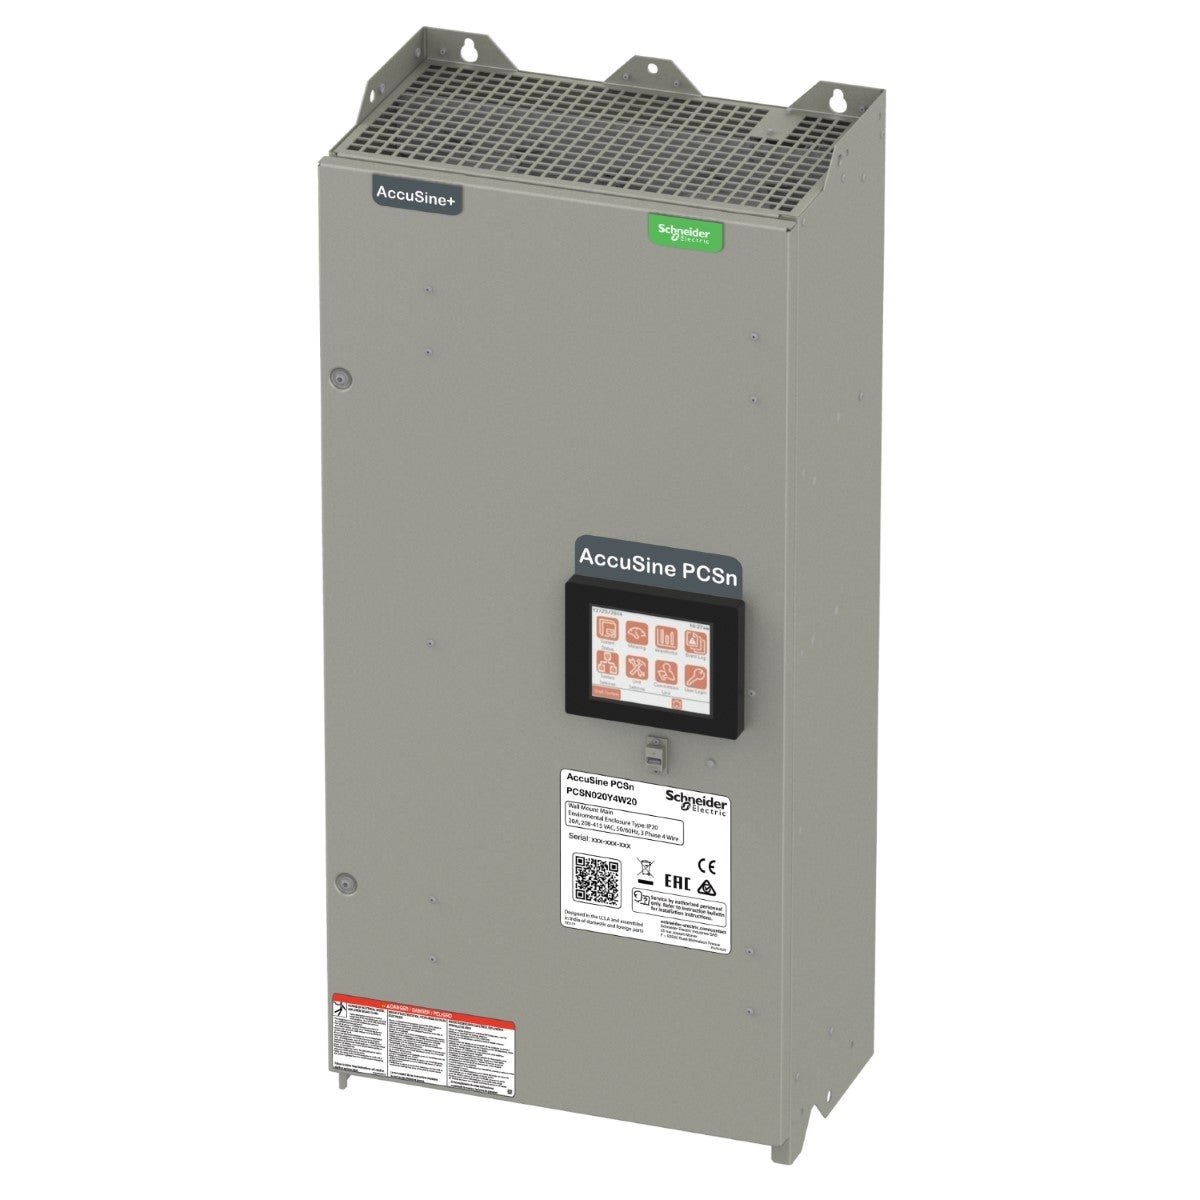 PCSN active harmonic filter 20 amp 208-415 VAC - wall-mounted, IP20 enclosure